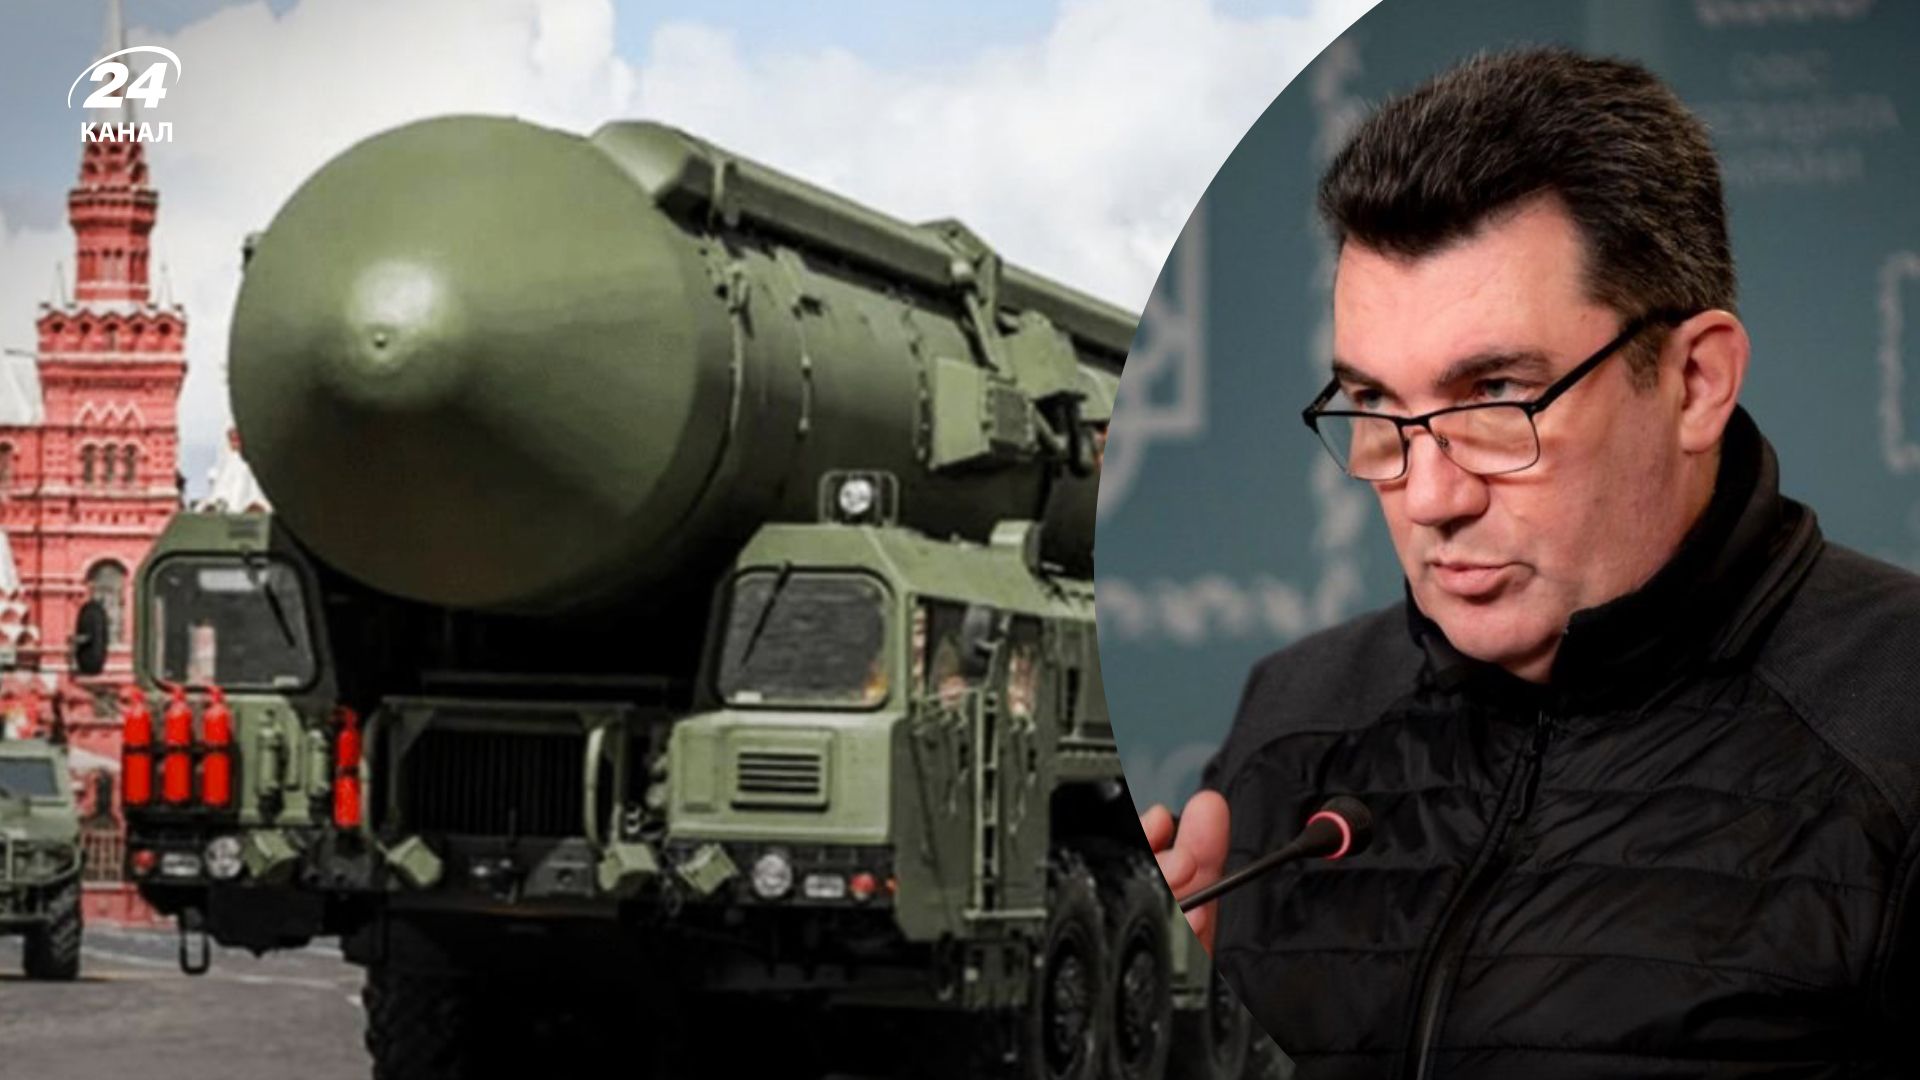 Ядерна загроза з боку Росії - Данілов припускає, що ядерну зброю у Кремля відберуть